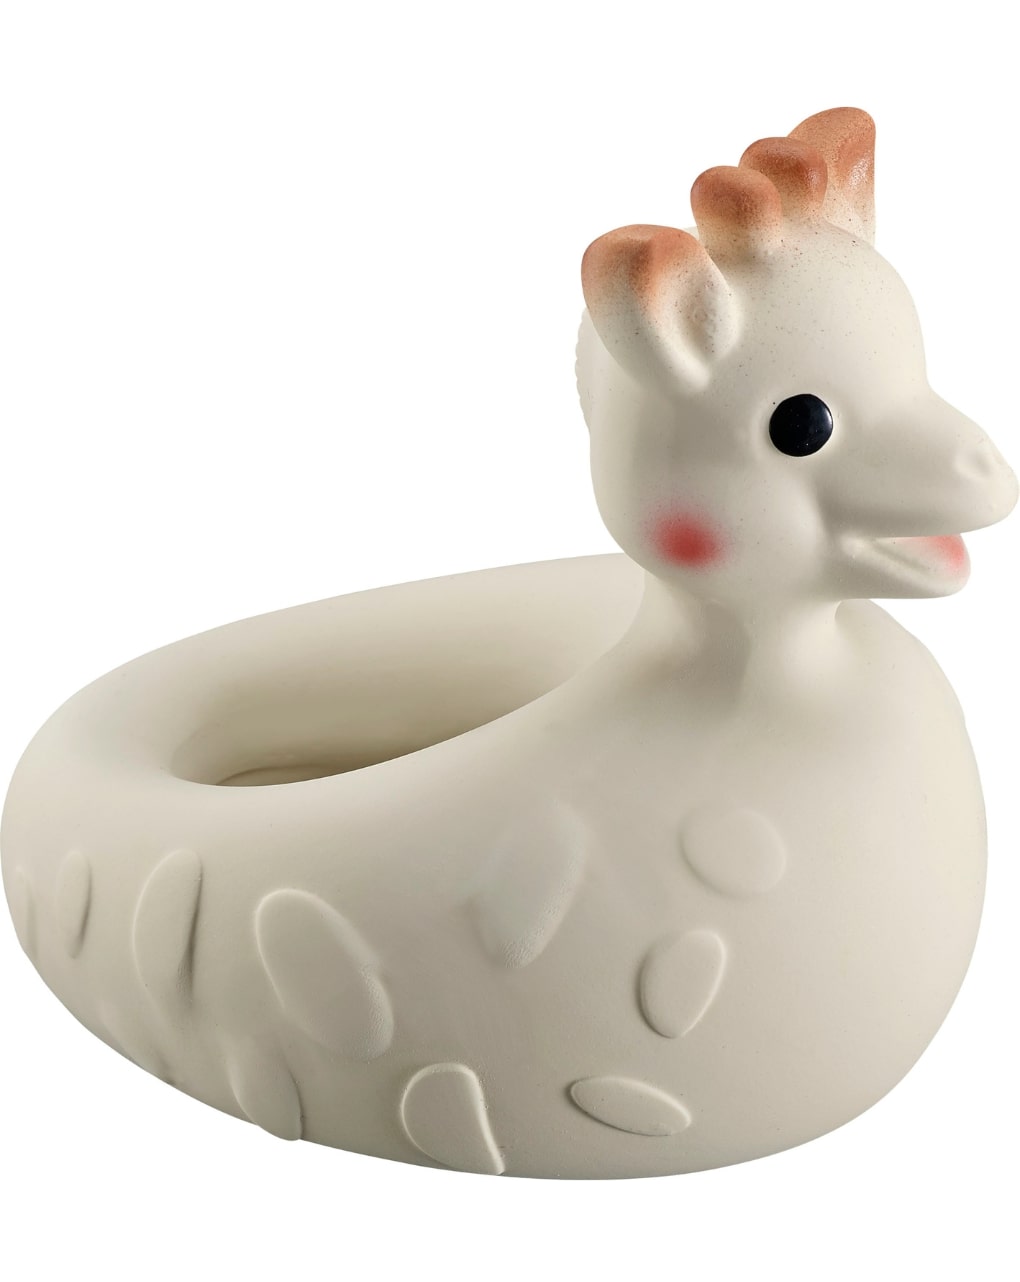 Brinquedo de banho puro so'pure sophie la girafe (borracha 100% natural) - vulli - SOPHIE LA GIRAFE